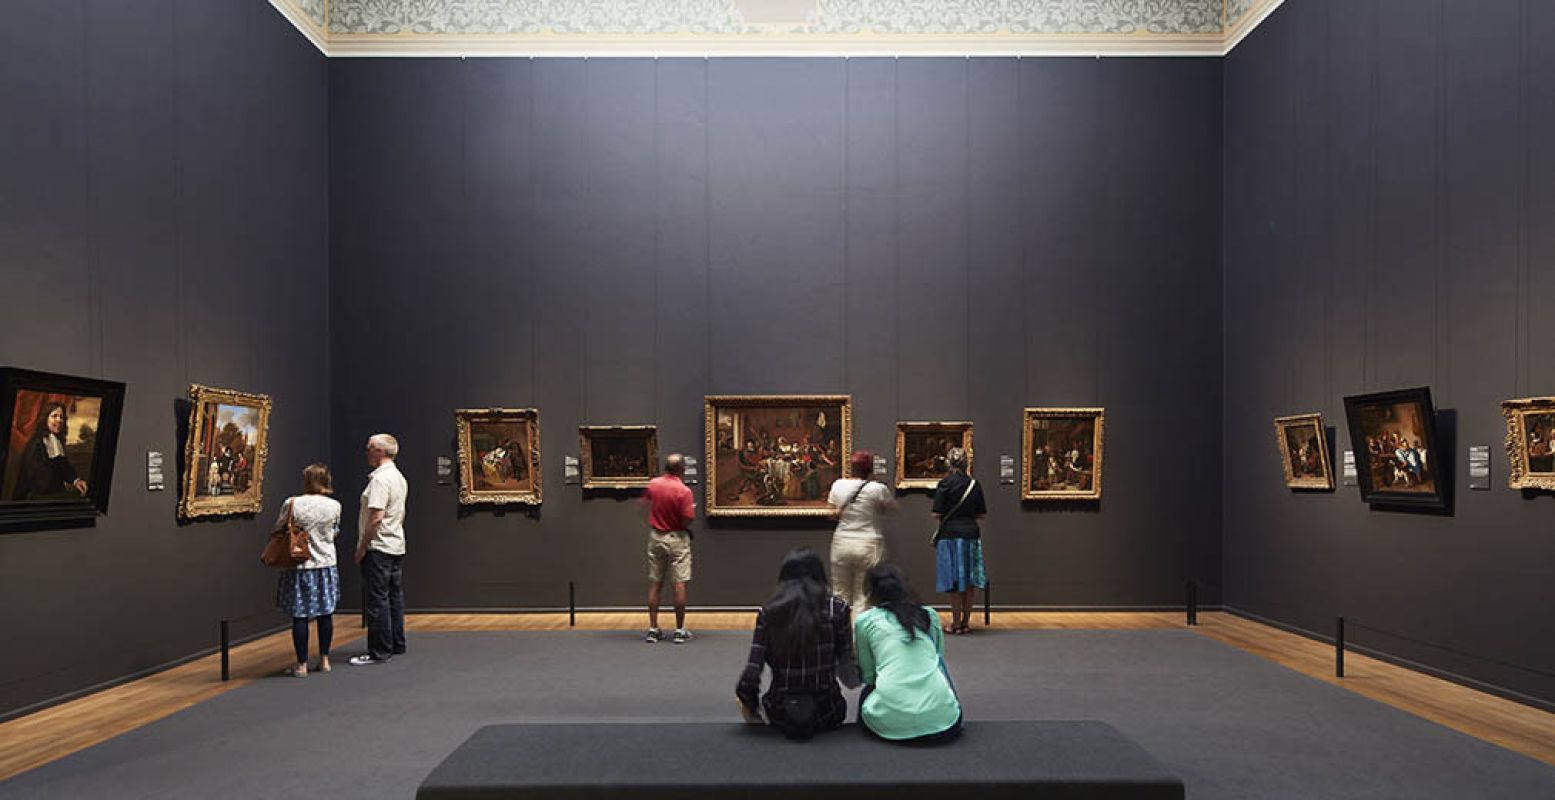 Bekijk samen schilderijen in de Eregalerij in Rijksmuseum Amsterdam. Foto: Rijksmuseum © Erik Smits.